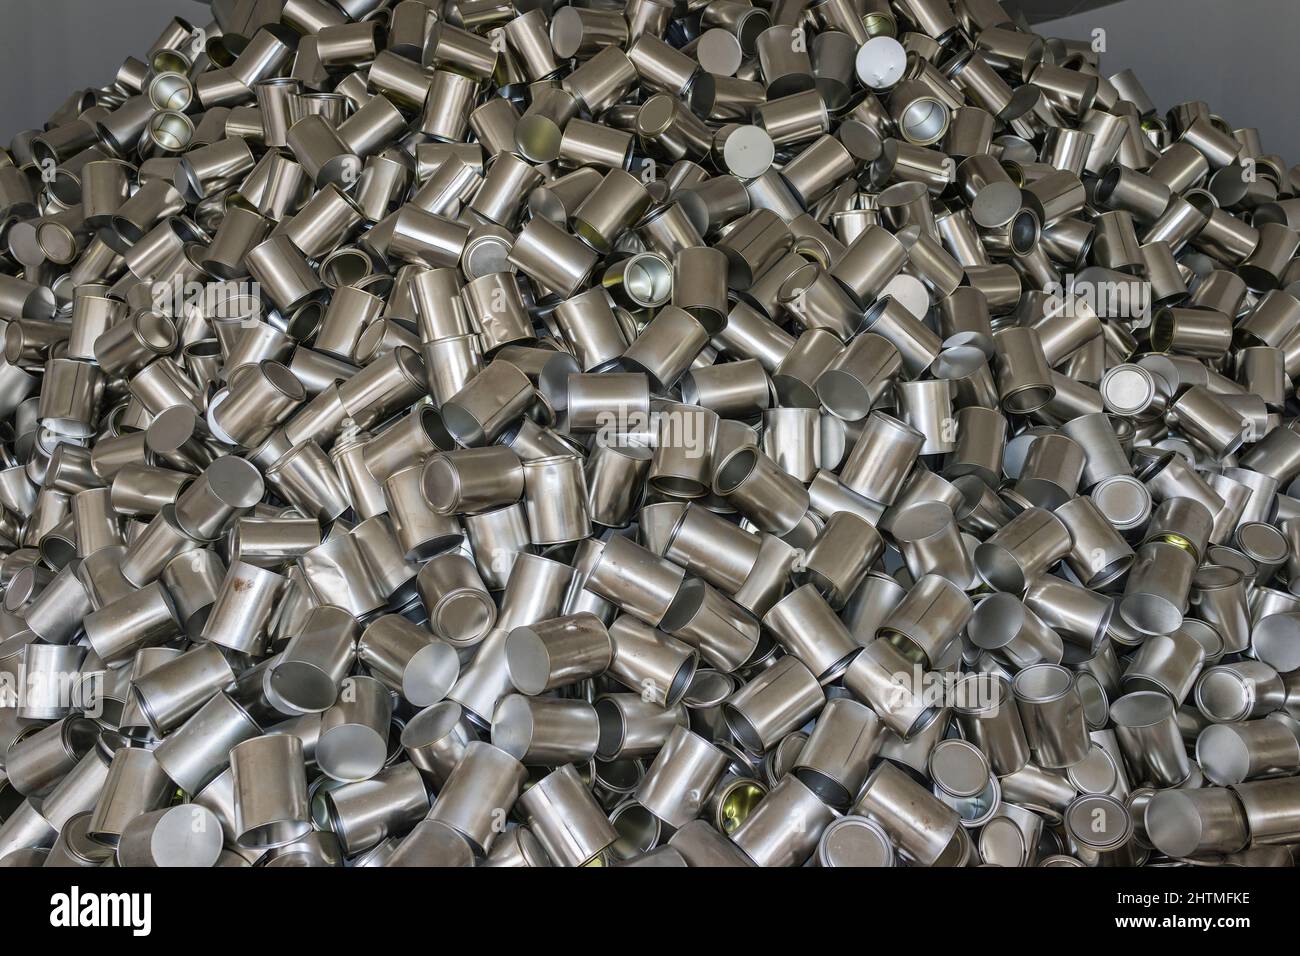 Milan, Italie - 1 octobre 2015 : Expo Milano 2015. Pile de canettes dans le Pavillon de la Corée symbolisant le gaspillage des ressources alimentaires et des ordures Banque D'Images